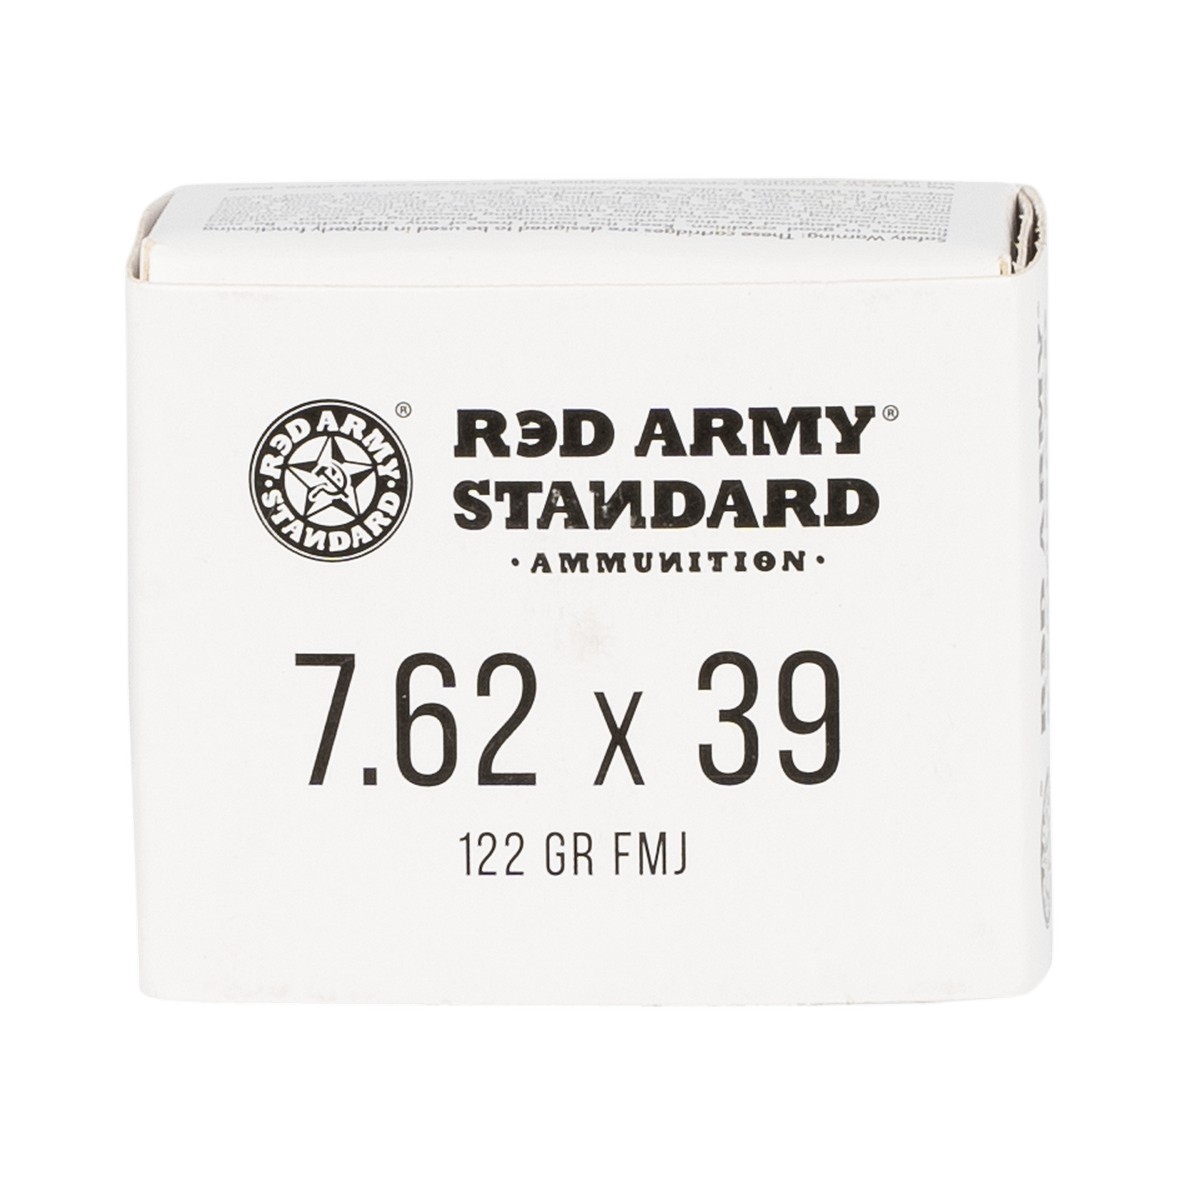  Army Standard AM3092 7.62x39mm 122 Gr FMJ 20 Rd Ammo